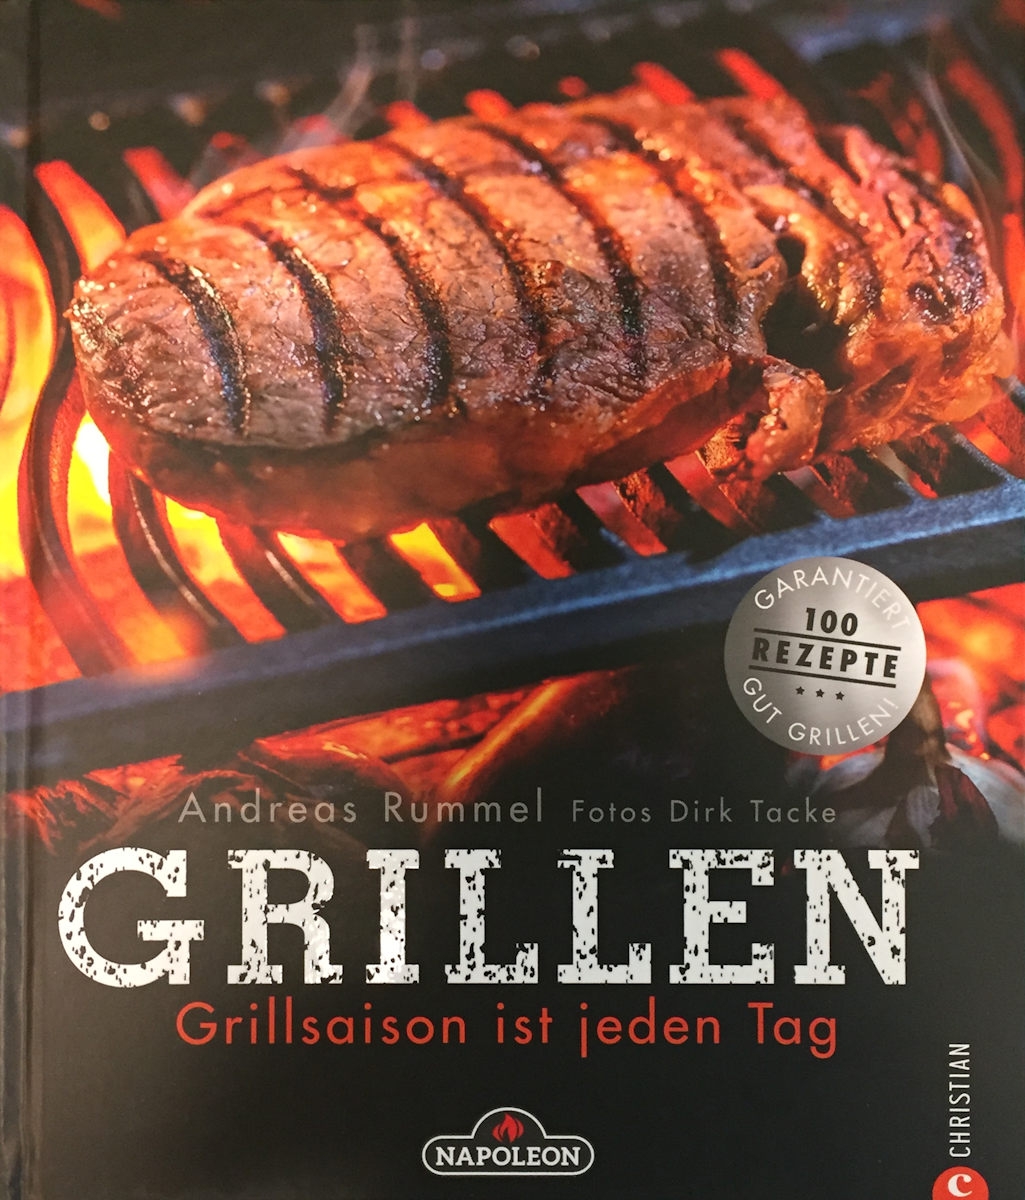 NAPOLEON Grillbuch "Grillsaison ist jeden Tag" von Napoleon Gourmet Grill